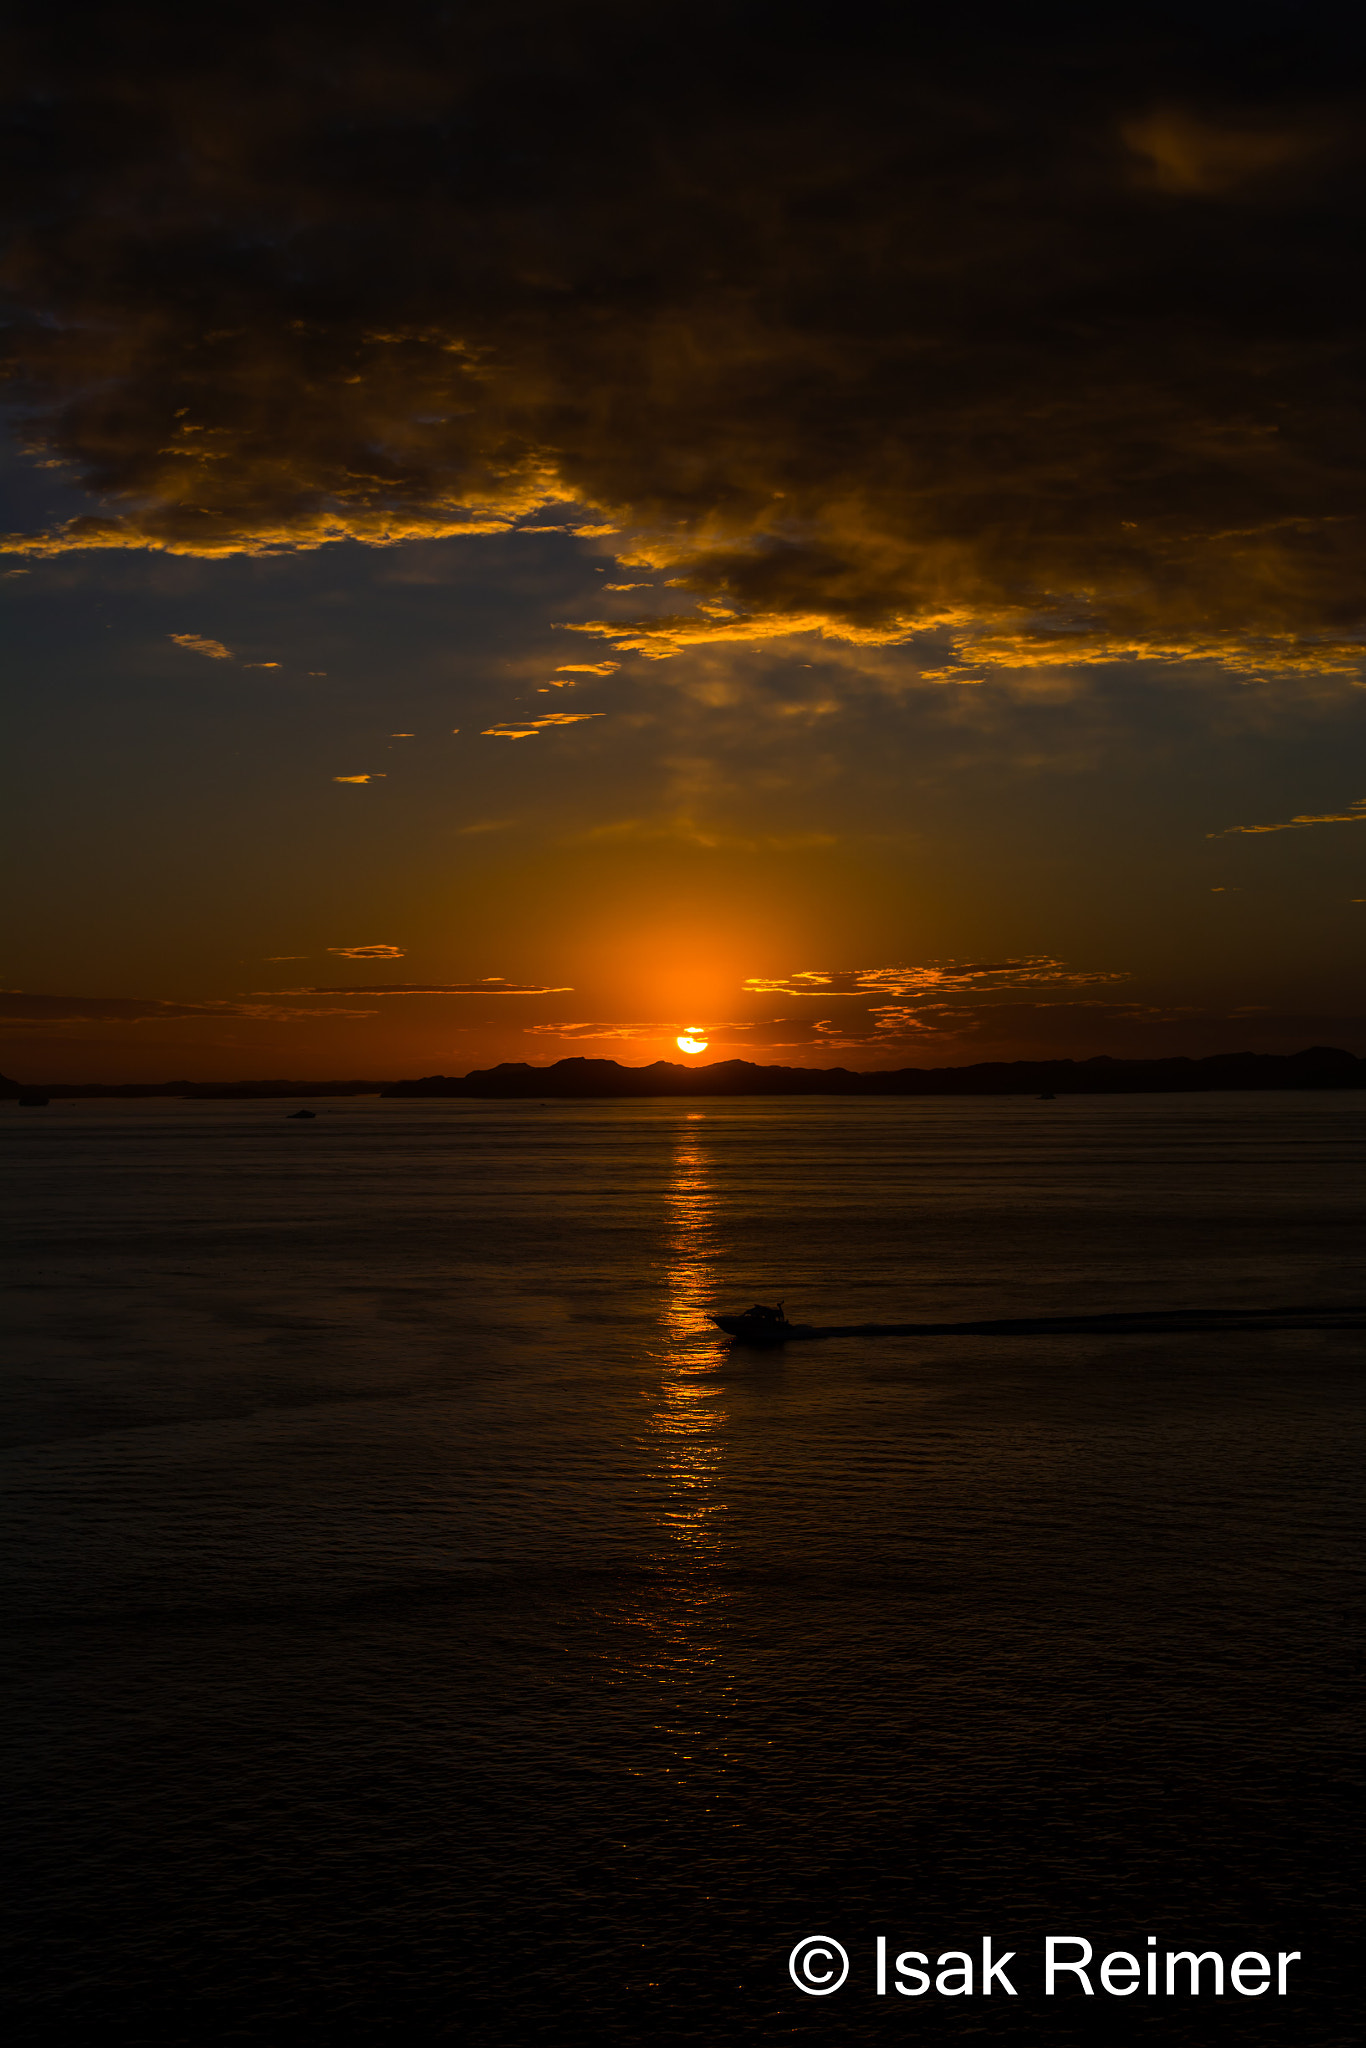 Nikon D5200 sample photo. Sunset photography